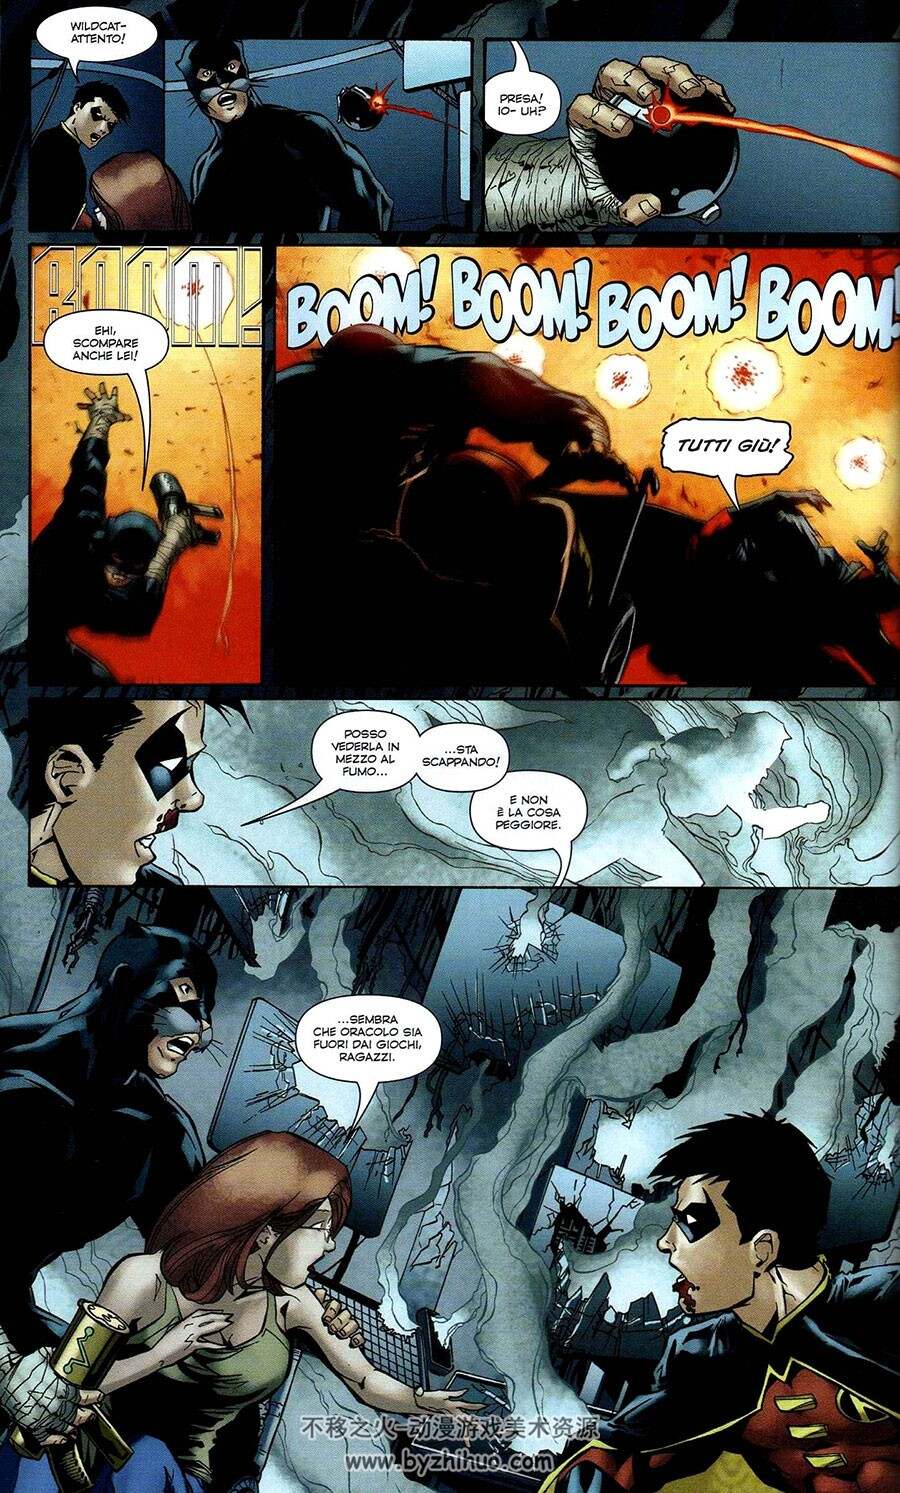 Batman - Gotham Underground 1-9册 Frank Tieri - Jim Calafiore 意大利语DC蝙蝠侠漫画下载